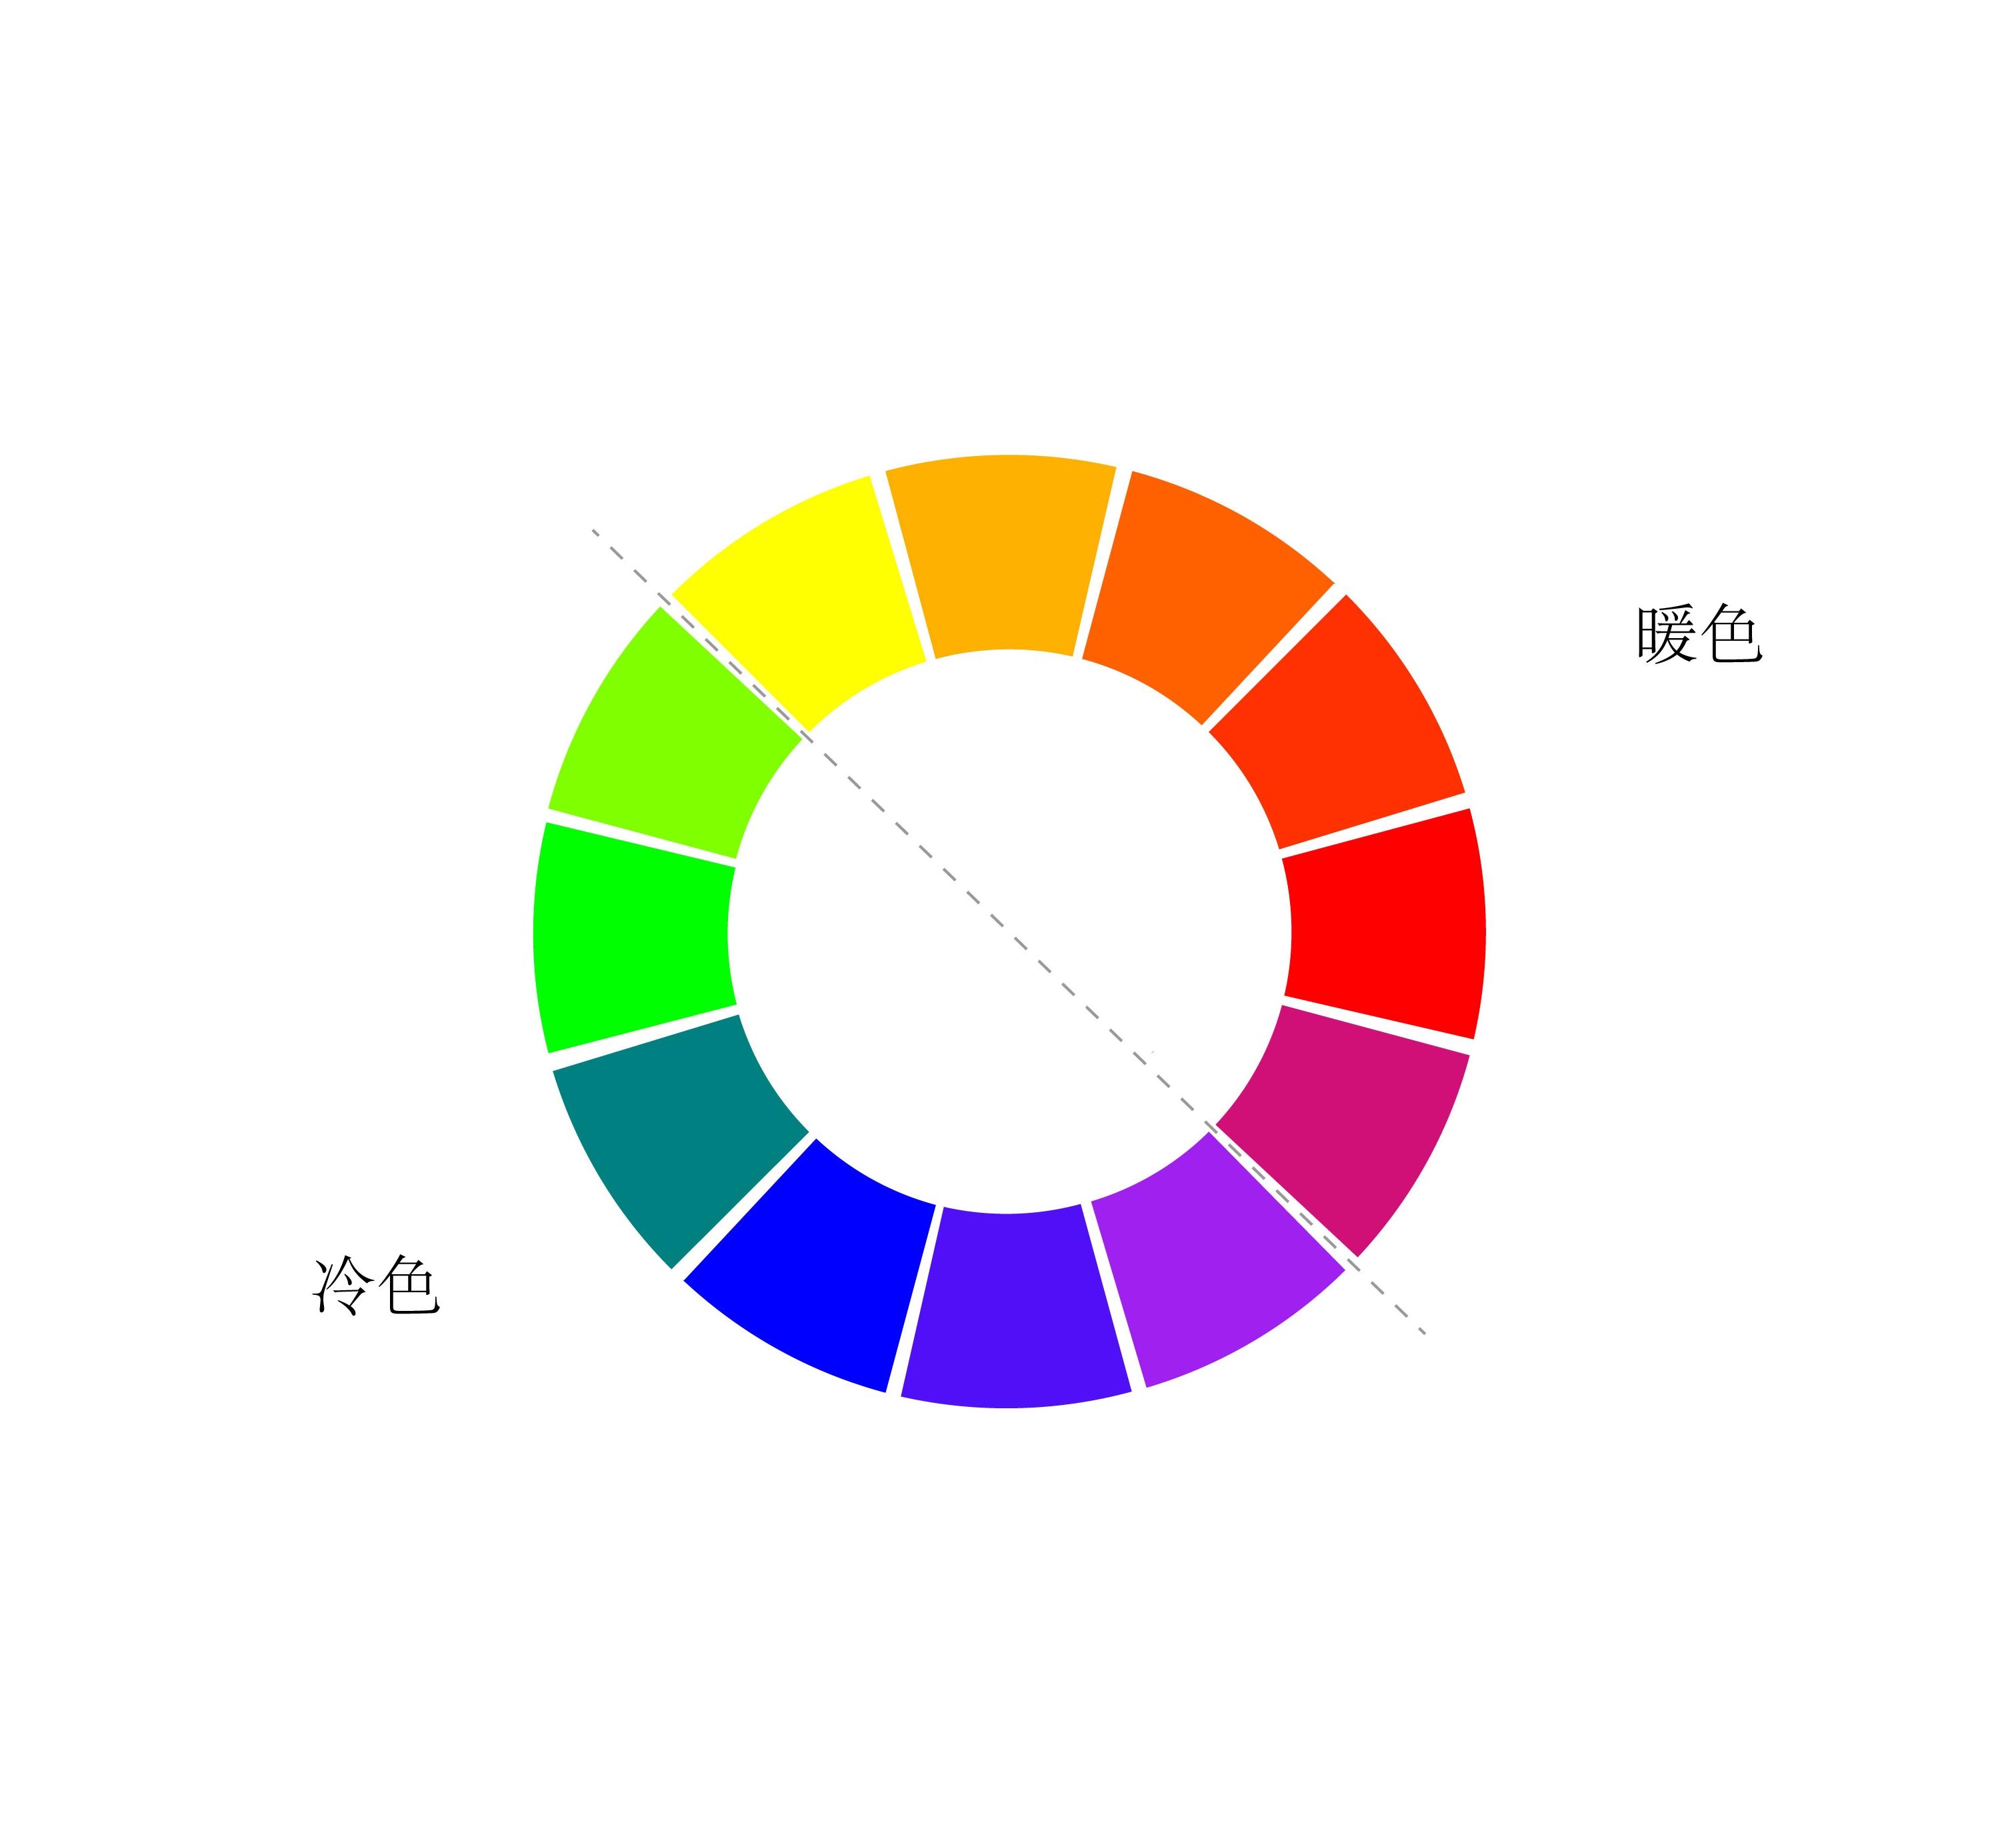 颜色之间又有冷暖之分↓12色相环↑三原色中任何两种颜色,以同等比例